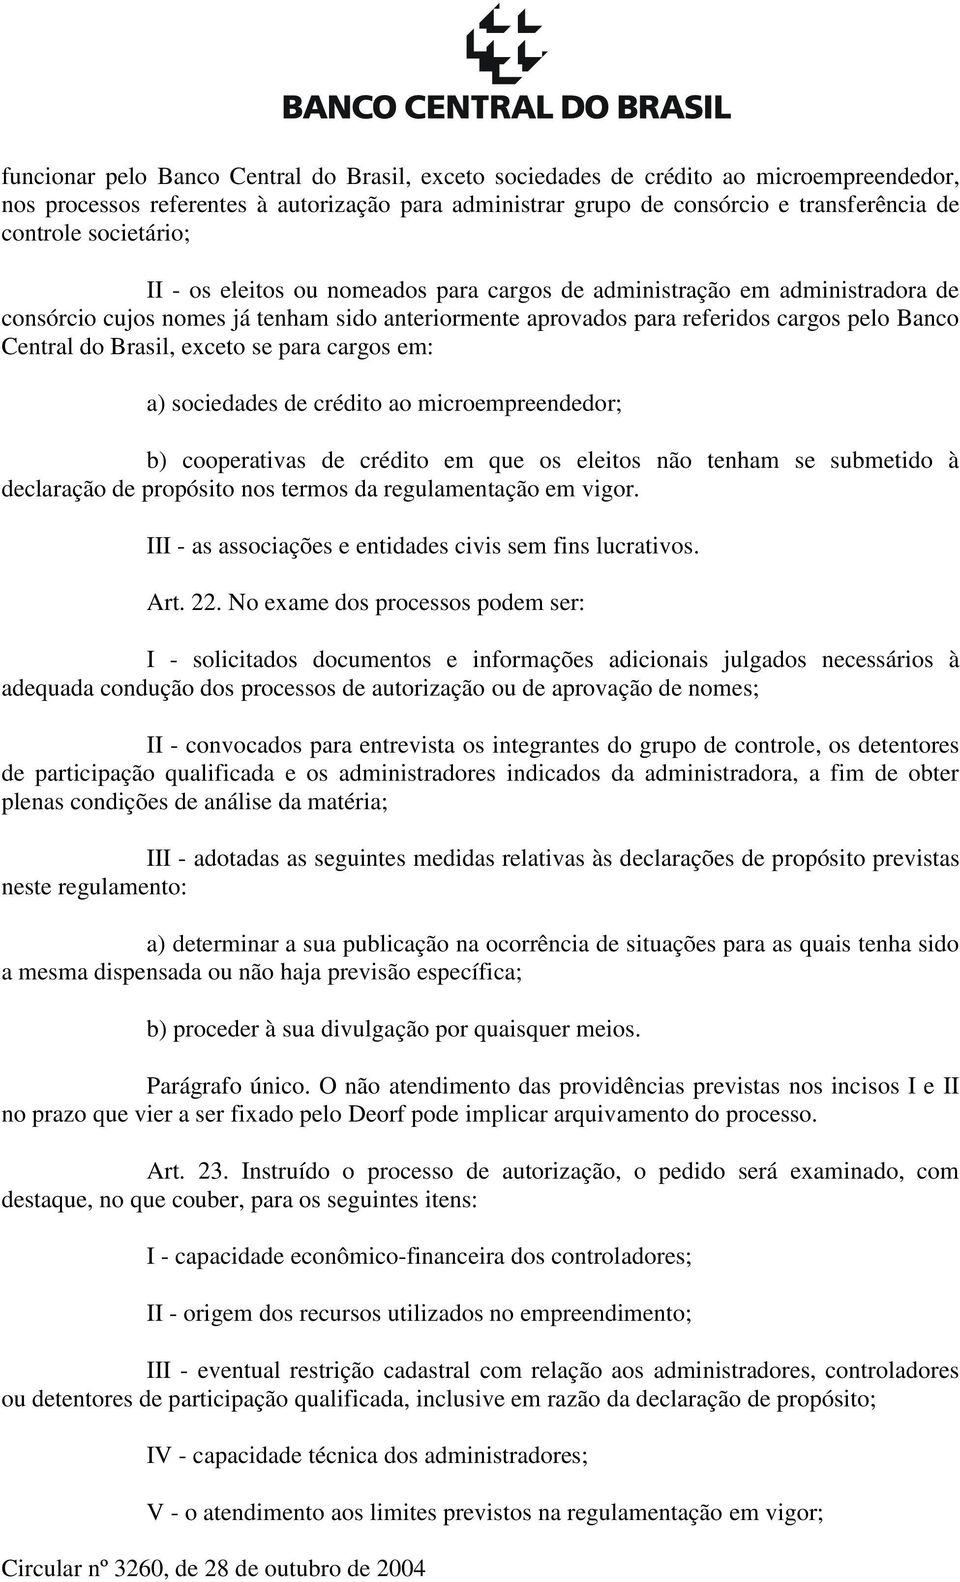 Brasil, exceto se para cargos em: a) sociedades de crédito ao microempreendedor; b) cooperativas de crédito em que os eleitos não tenham se submetido à declaração de propósito nos termos da